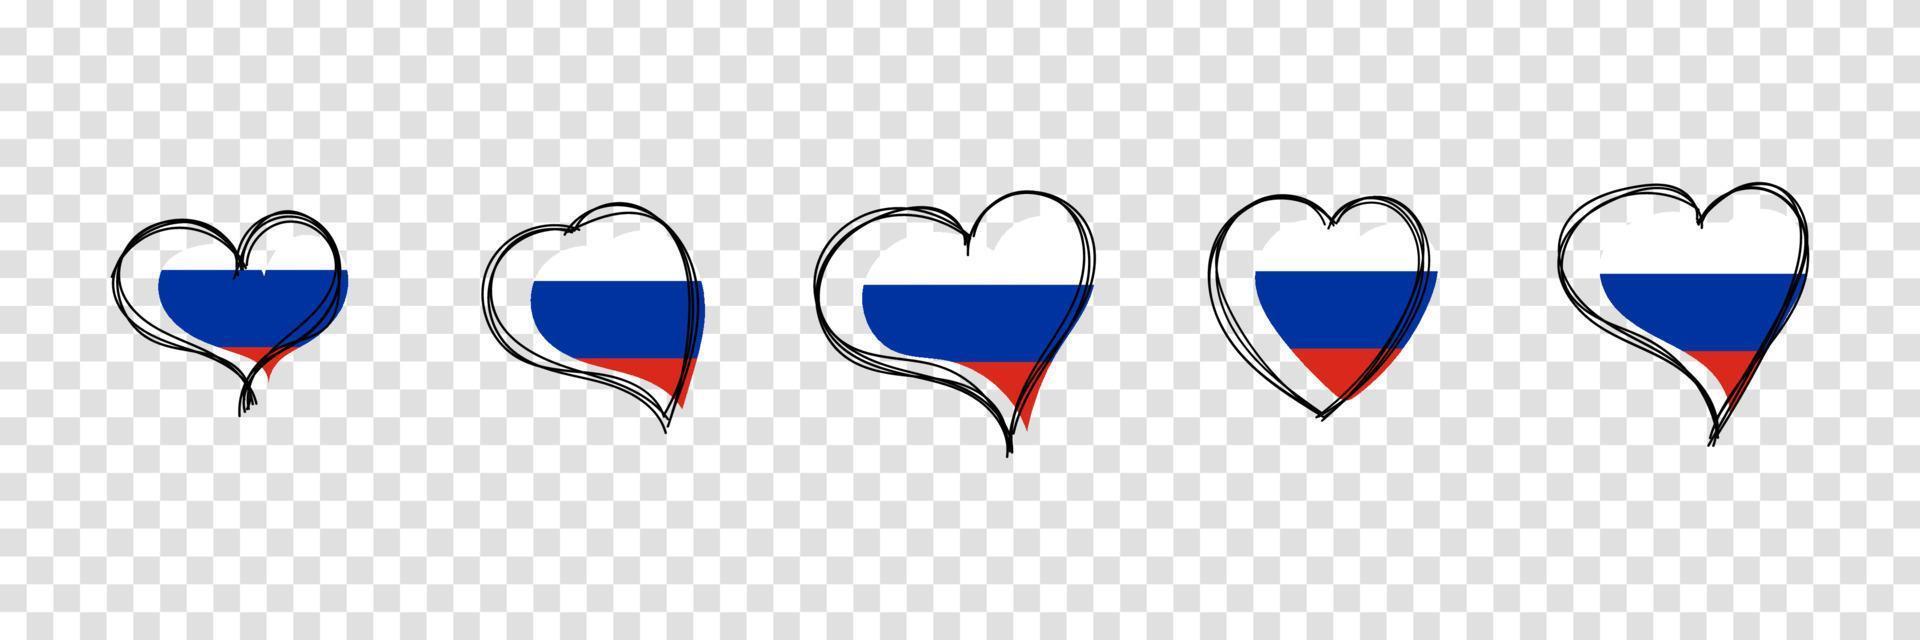 drapeau de la russie en forme de coeur. symbole national de la russie. illustration vectorielle vecteur